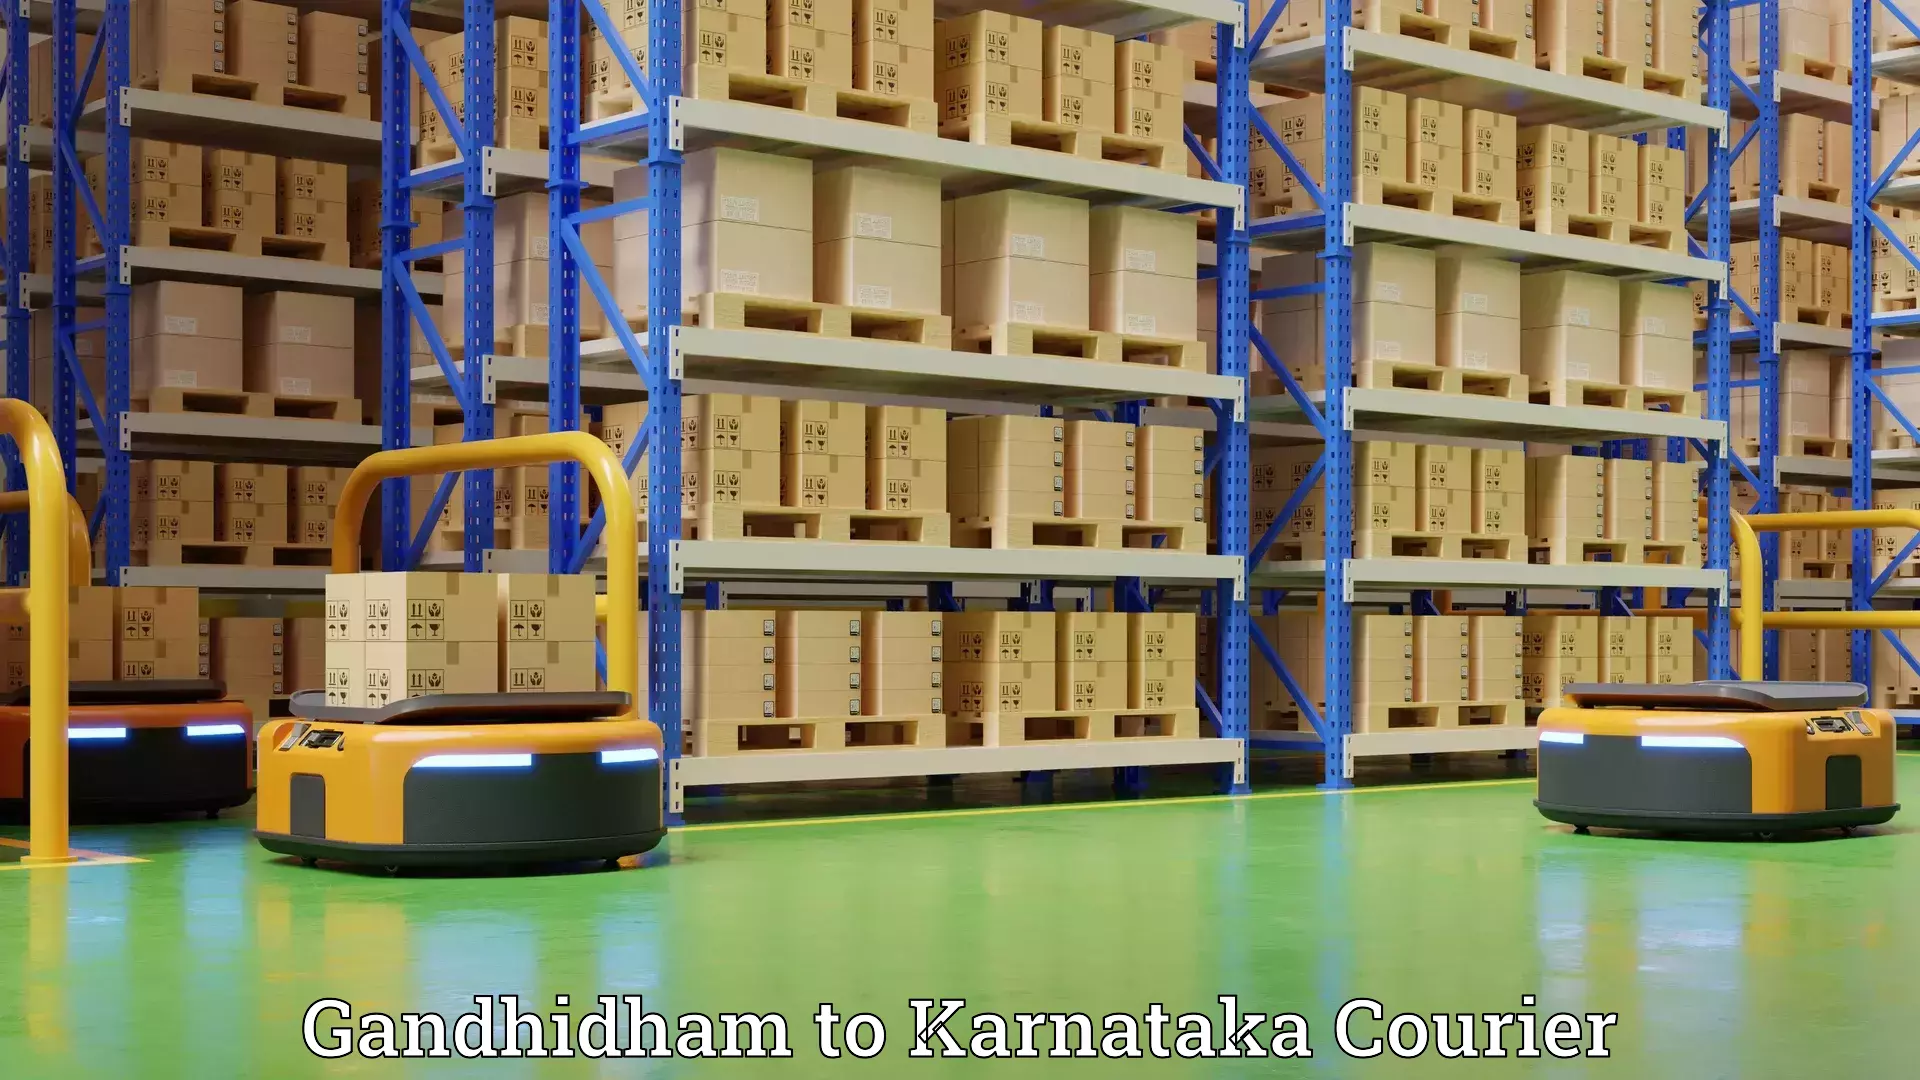 Quality moving and storage Gandhidham to Karnataka